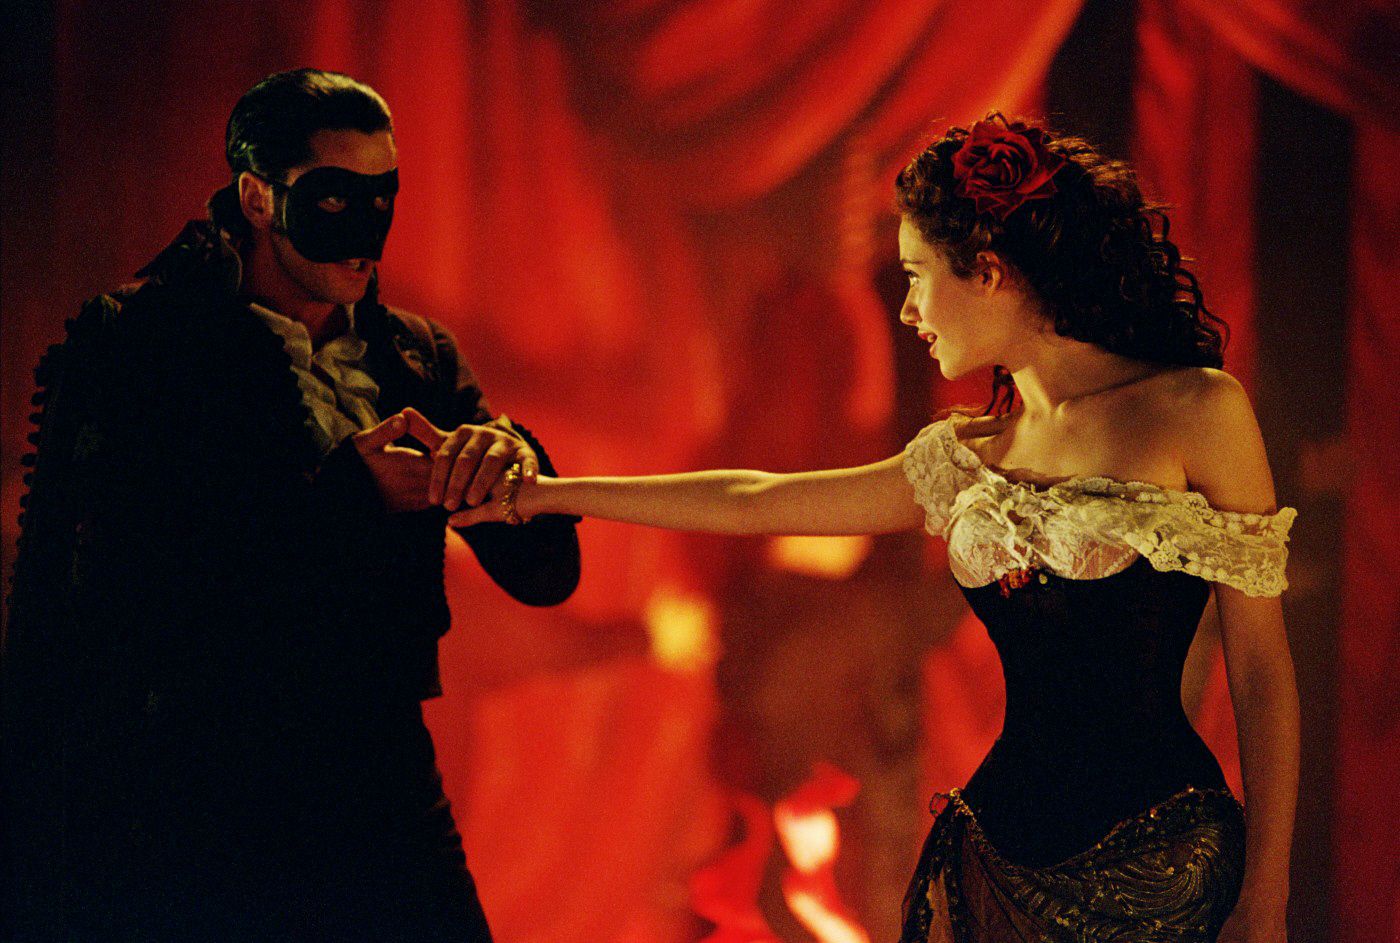 gerard butler phantom of the opera masquerade